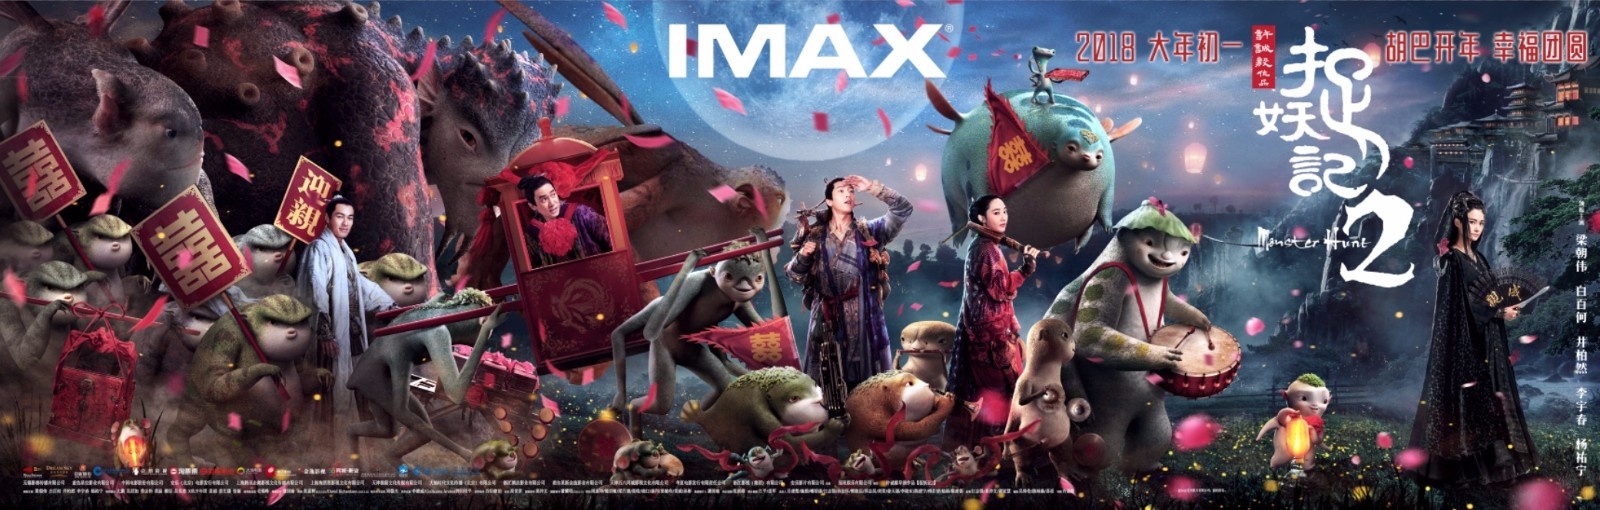 《捉妖记2》将于2月16大年初一登陆全国IMAX影院(图2)